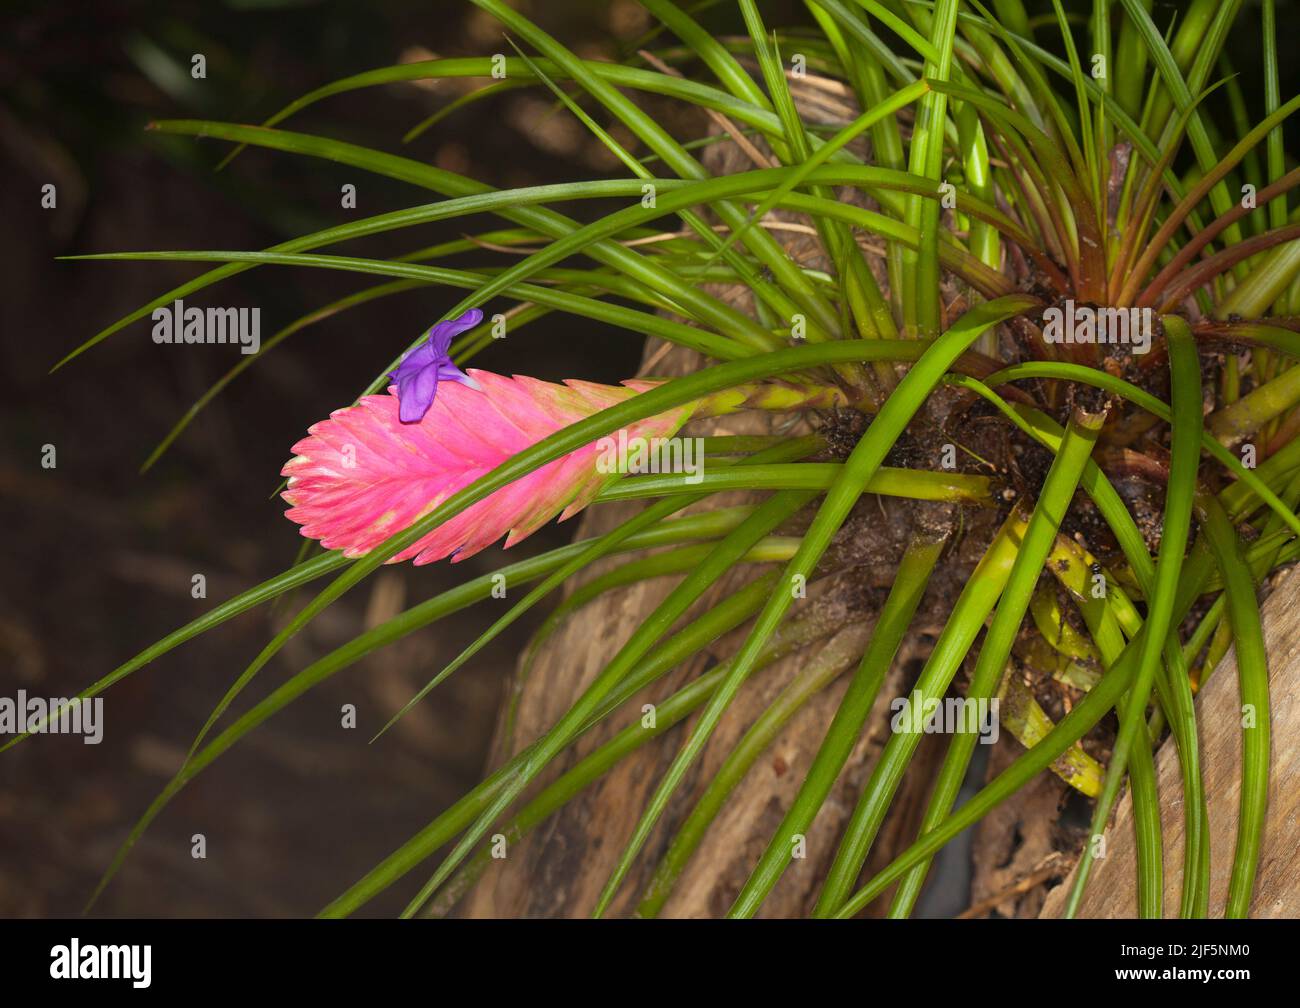 Lange grüne Blätter, leuchtend rosafarbene Blätter und lila duftende Blume von Tillandsia cyanea, einer Bromelie, die in einem Holzstumpf in einem Garten in Australien wächst Stockfoto